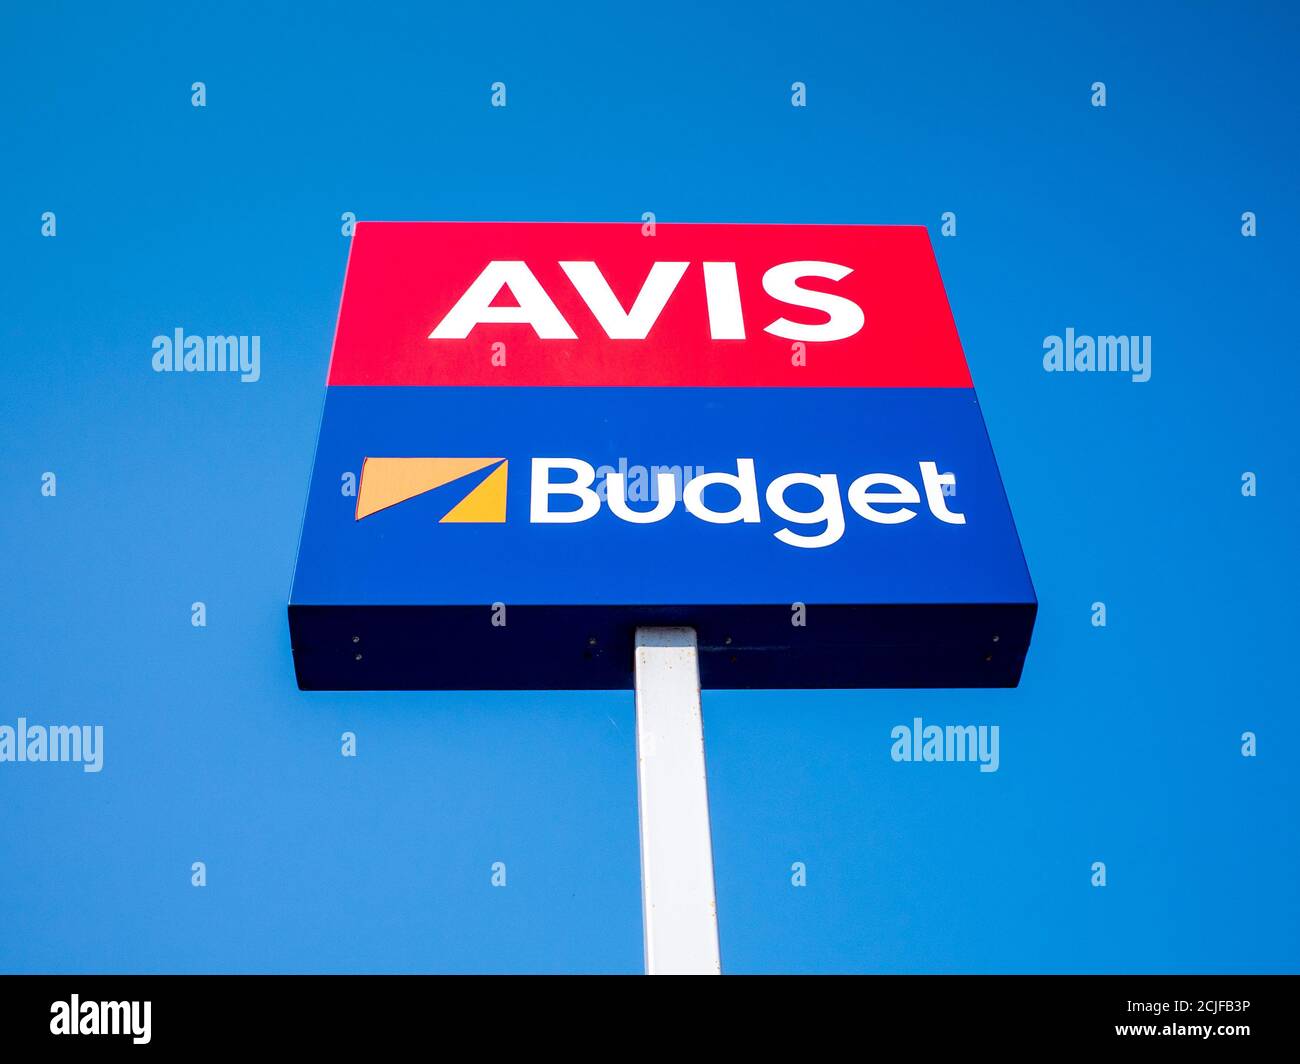 Avis Budget Group - signe de location de voitures Avis et Budget contre un ciel bleu. Banque D'Images